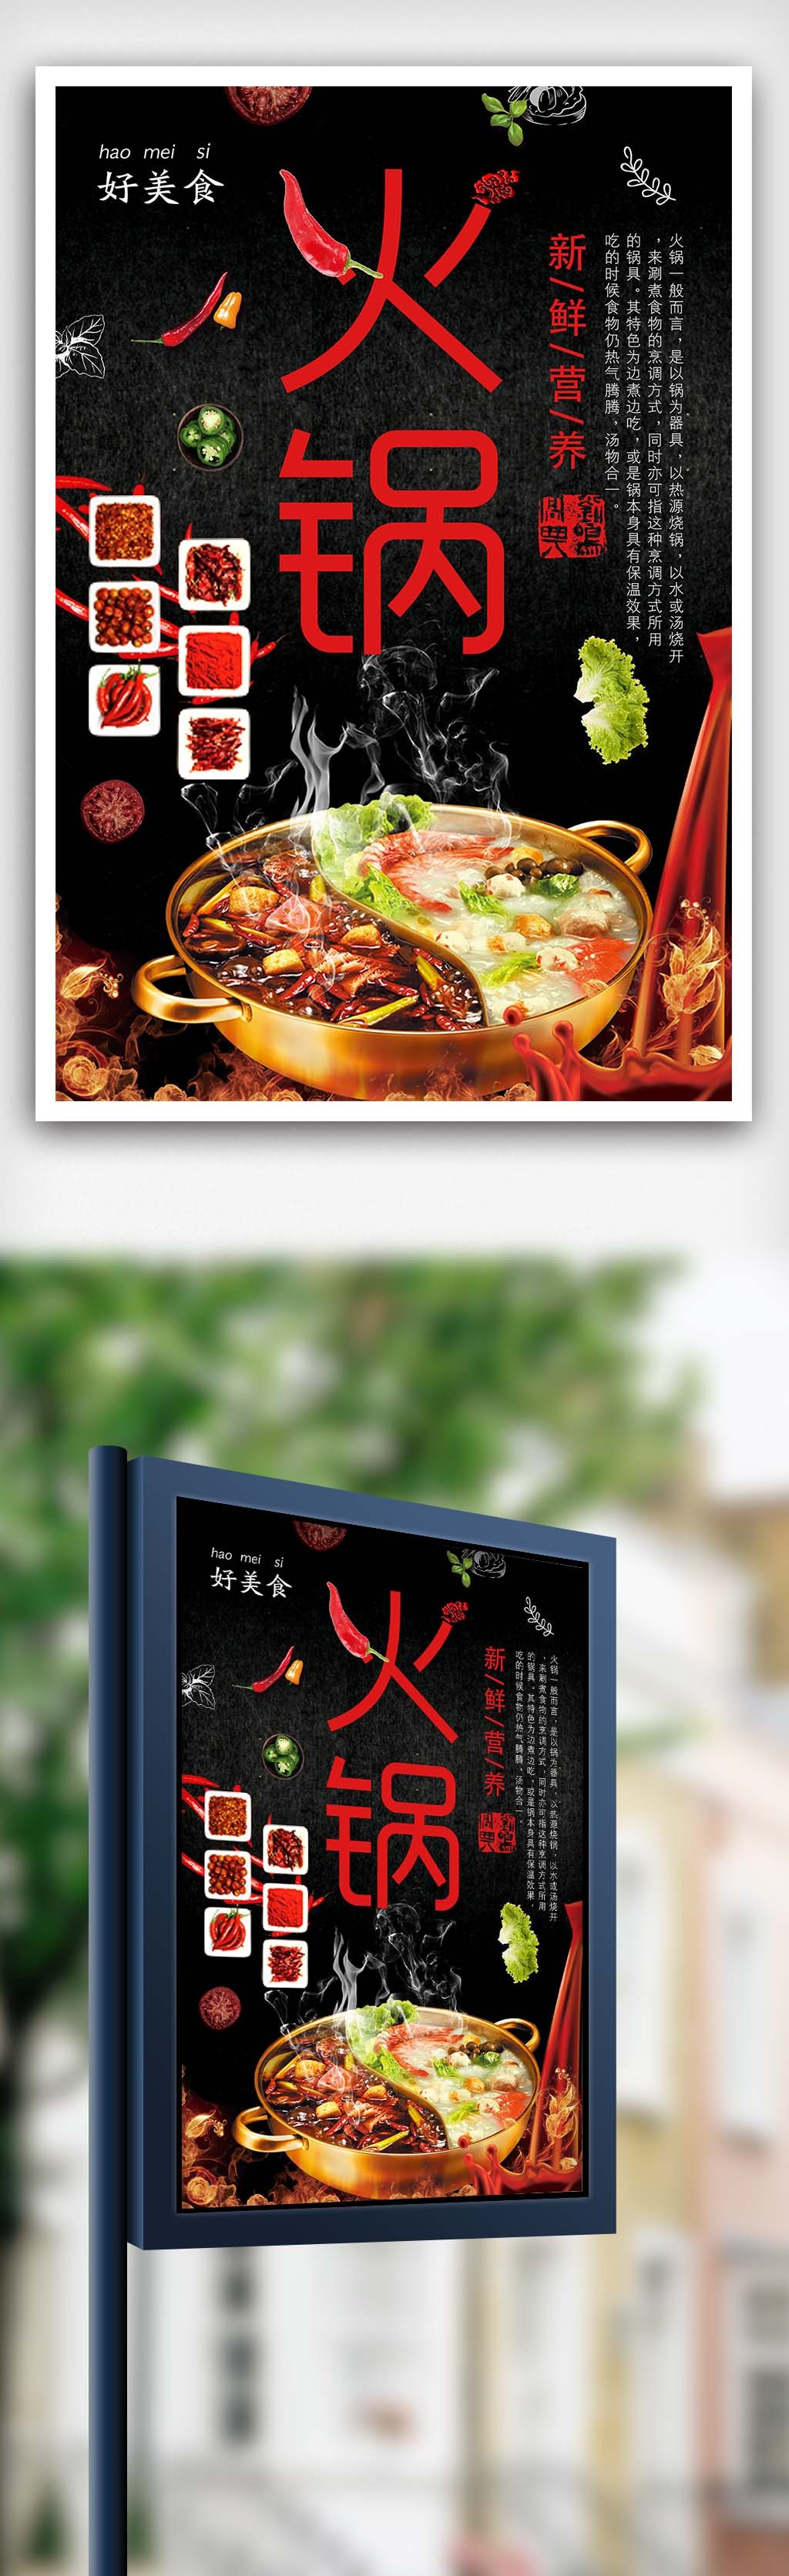 重庆火锅美食餐饮海报下载图片